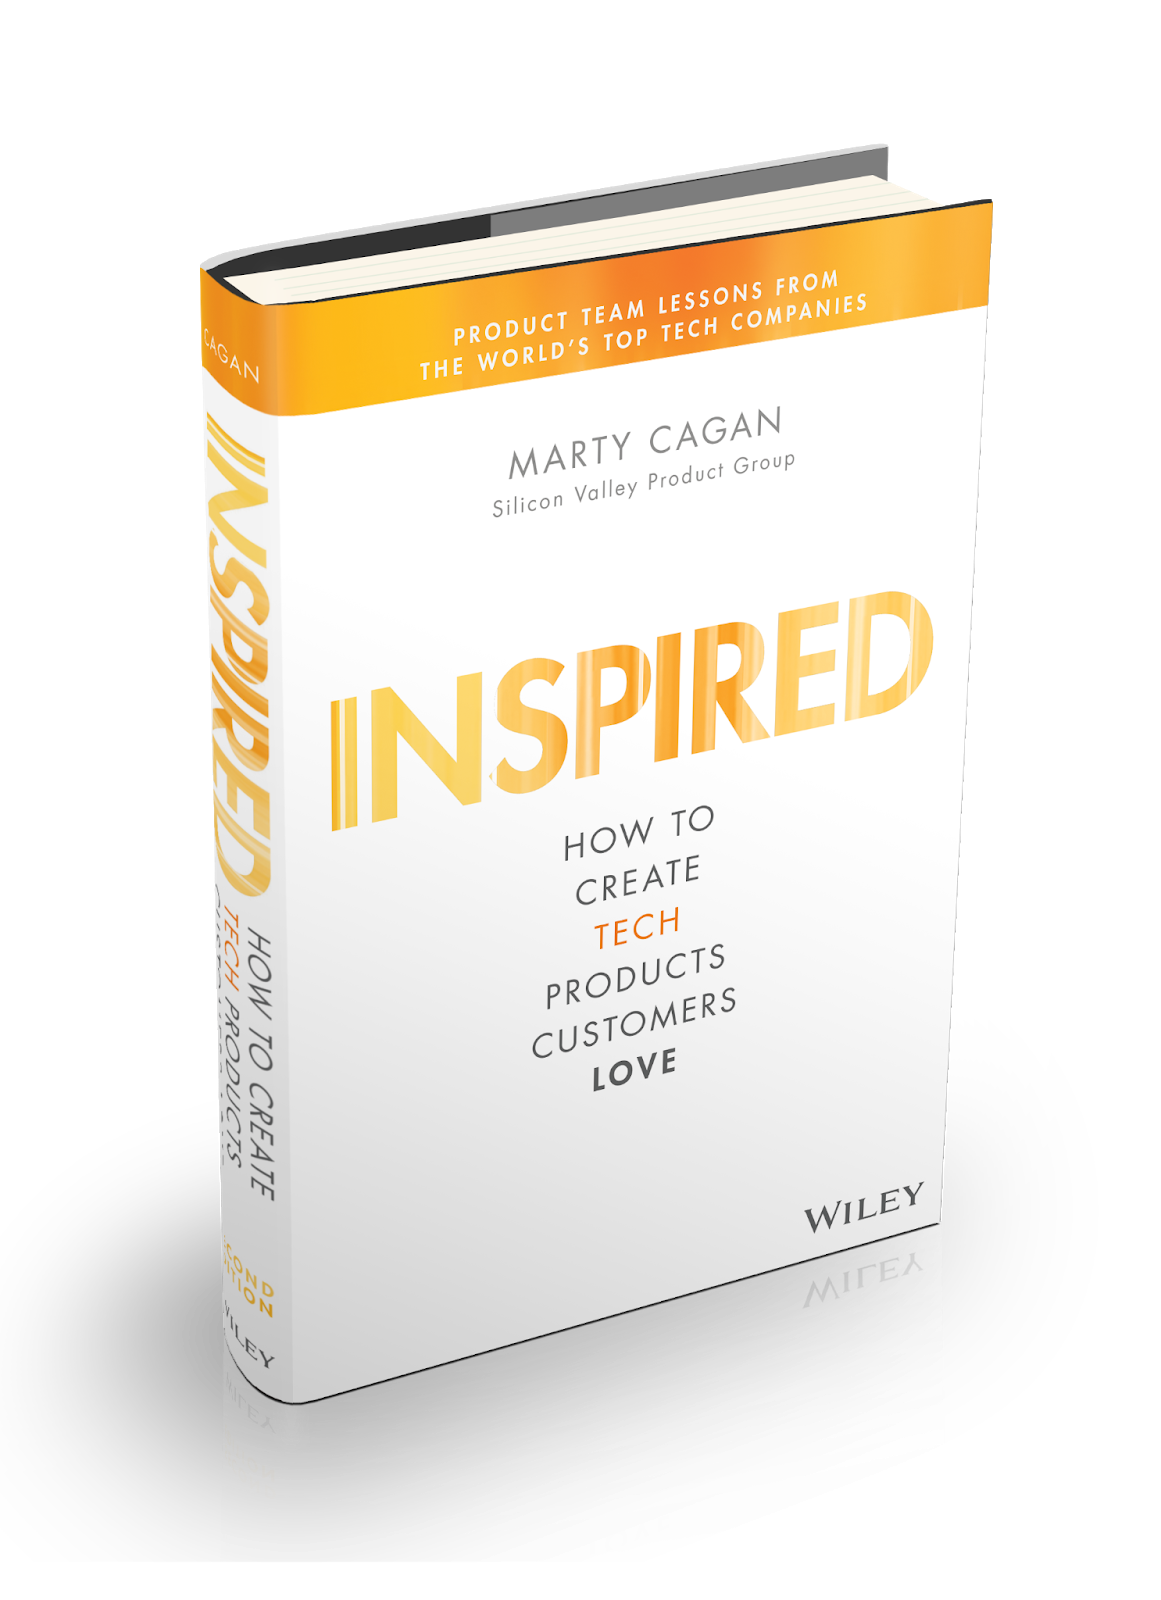 Imagem mostra projeção 3D do livro Inspired: How To Create Tech Products Customers Love, de Marty Cagan, com destaque para a capa e lombada.